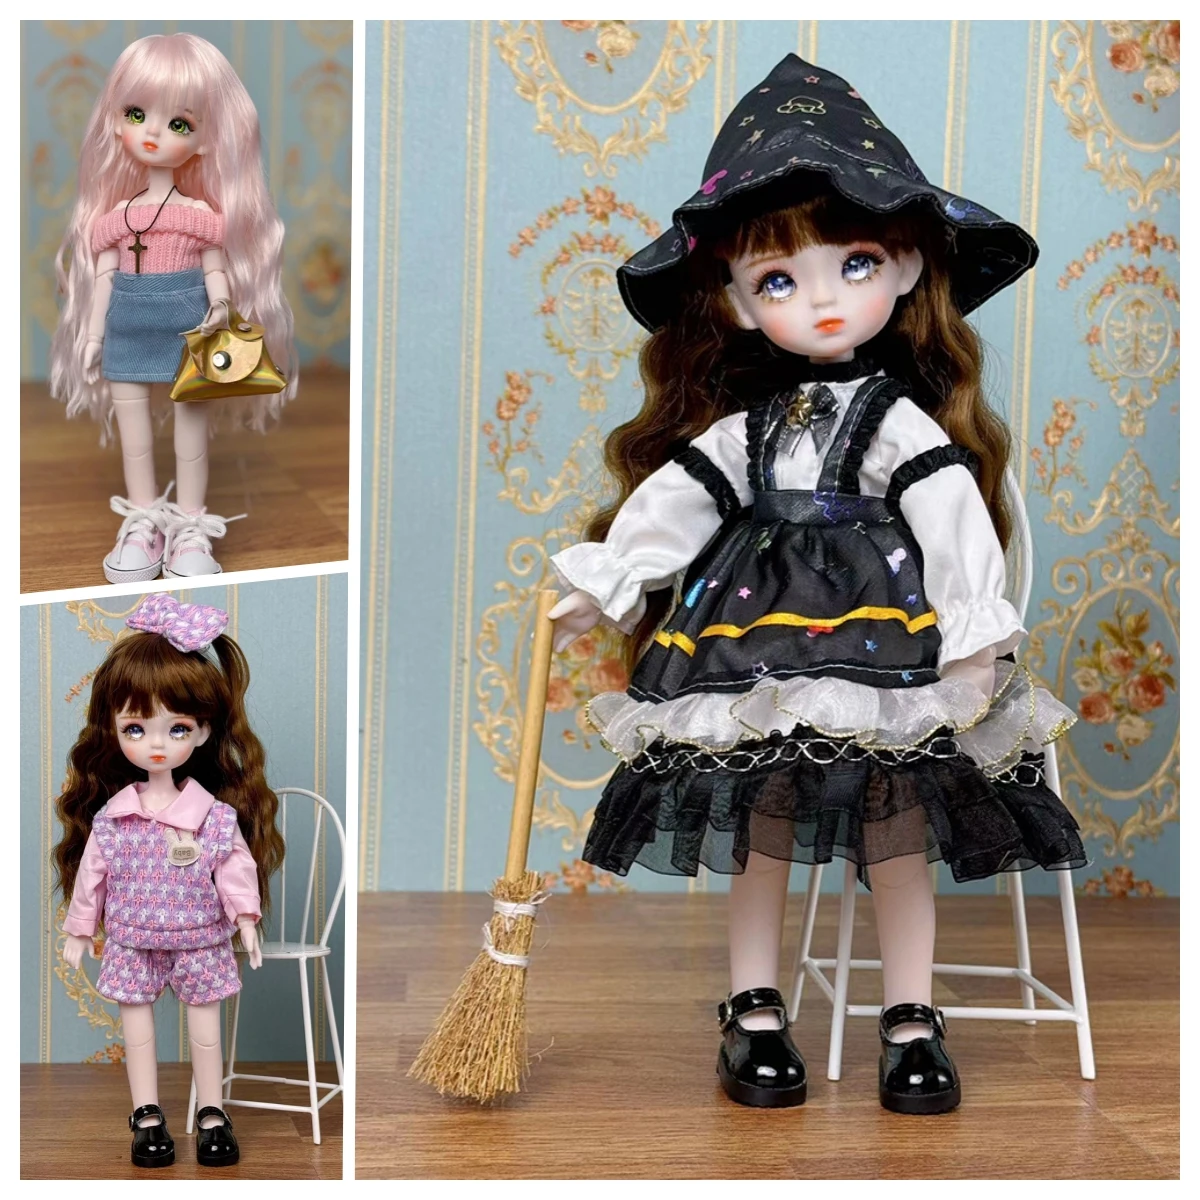 

Шарнирная кукла ручной работы 1/6, полный комплект, 28 см, кукла принцесса с 3 парными глазами, Детская кукла для девочек, подарок на день рождения (открытая голова)